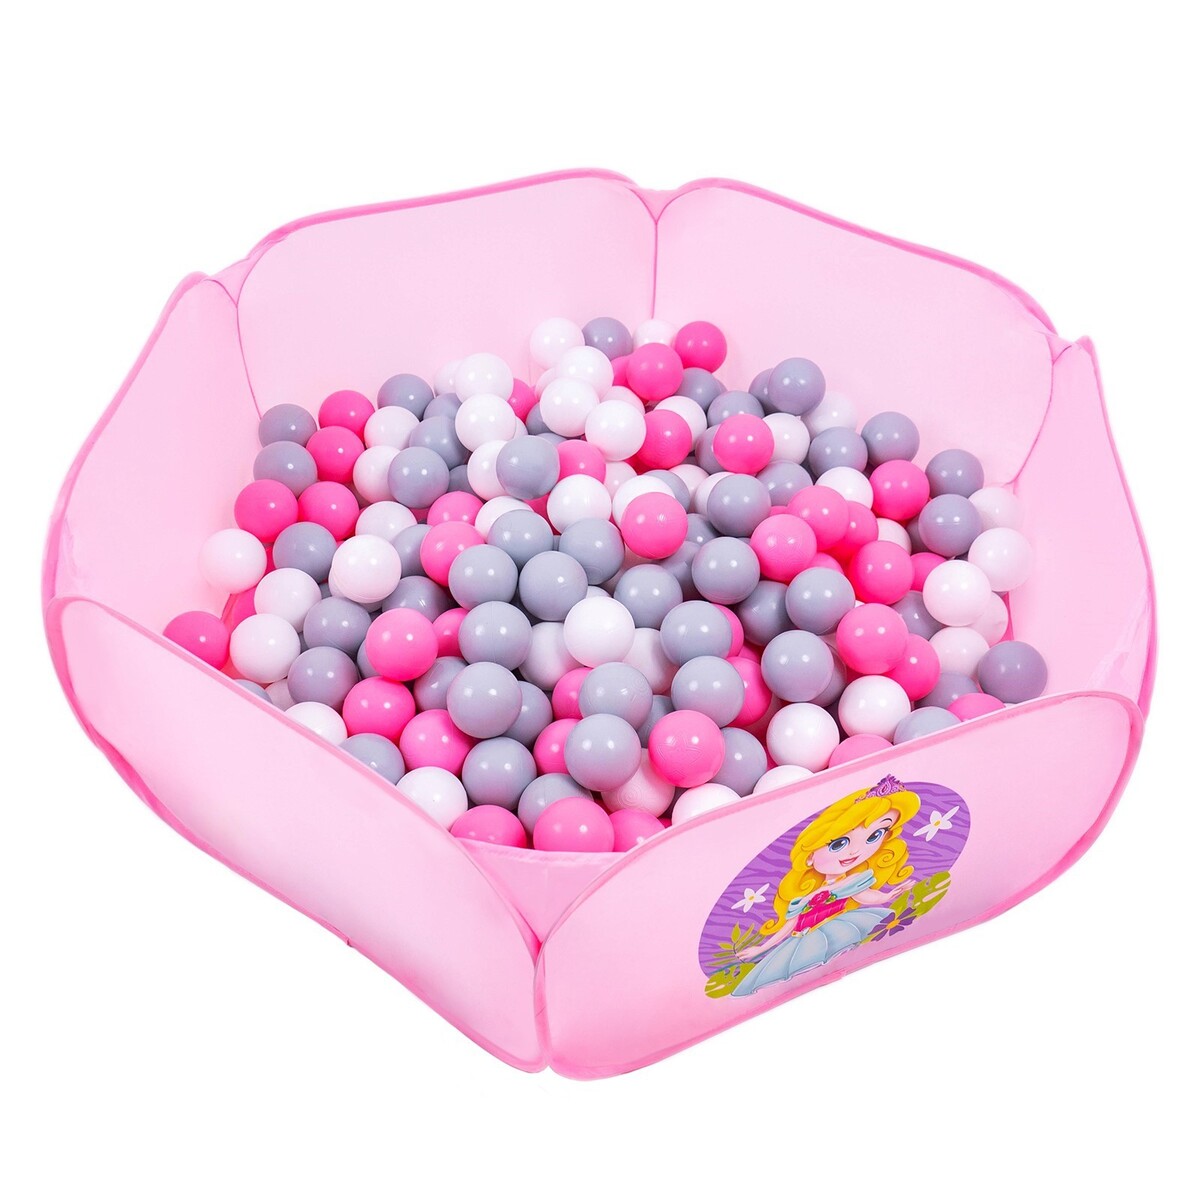 Шарики для сухого бассейна с рисунком, диаметр шара 7,5 см, набор 60 штук, цвет розовый, белый, серый шарики для сухого бассейна соломон диаметр 5 см 150 шт